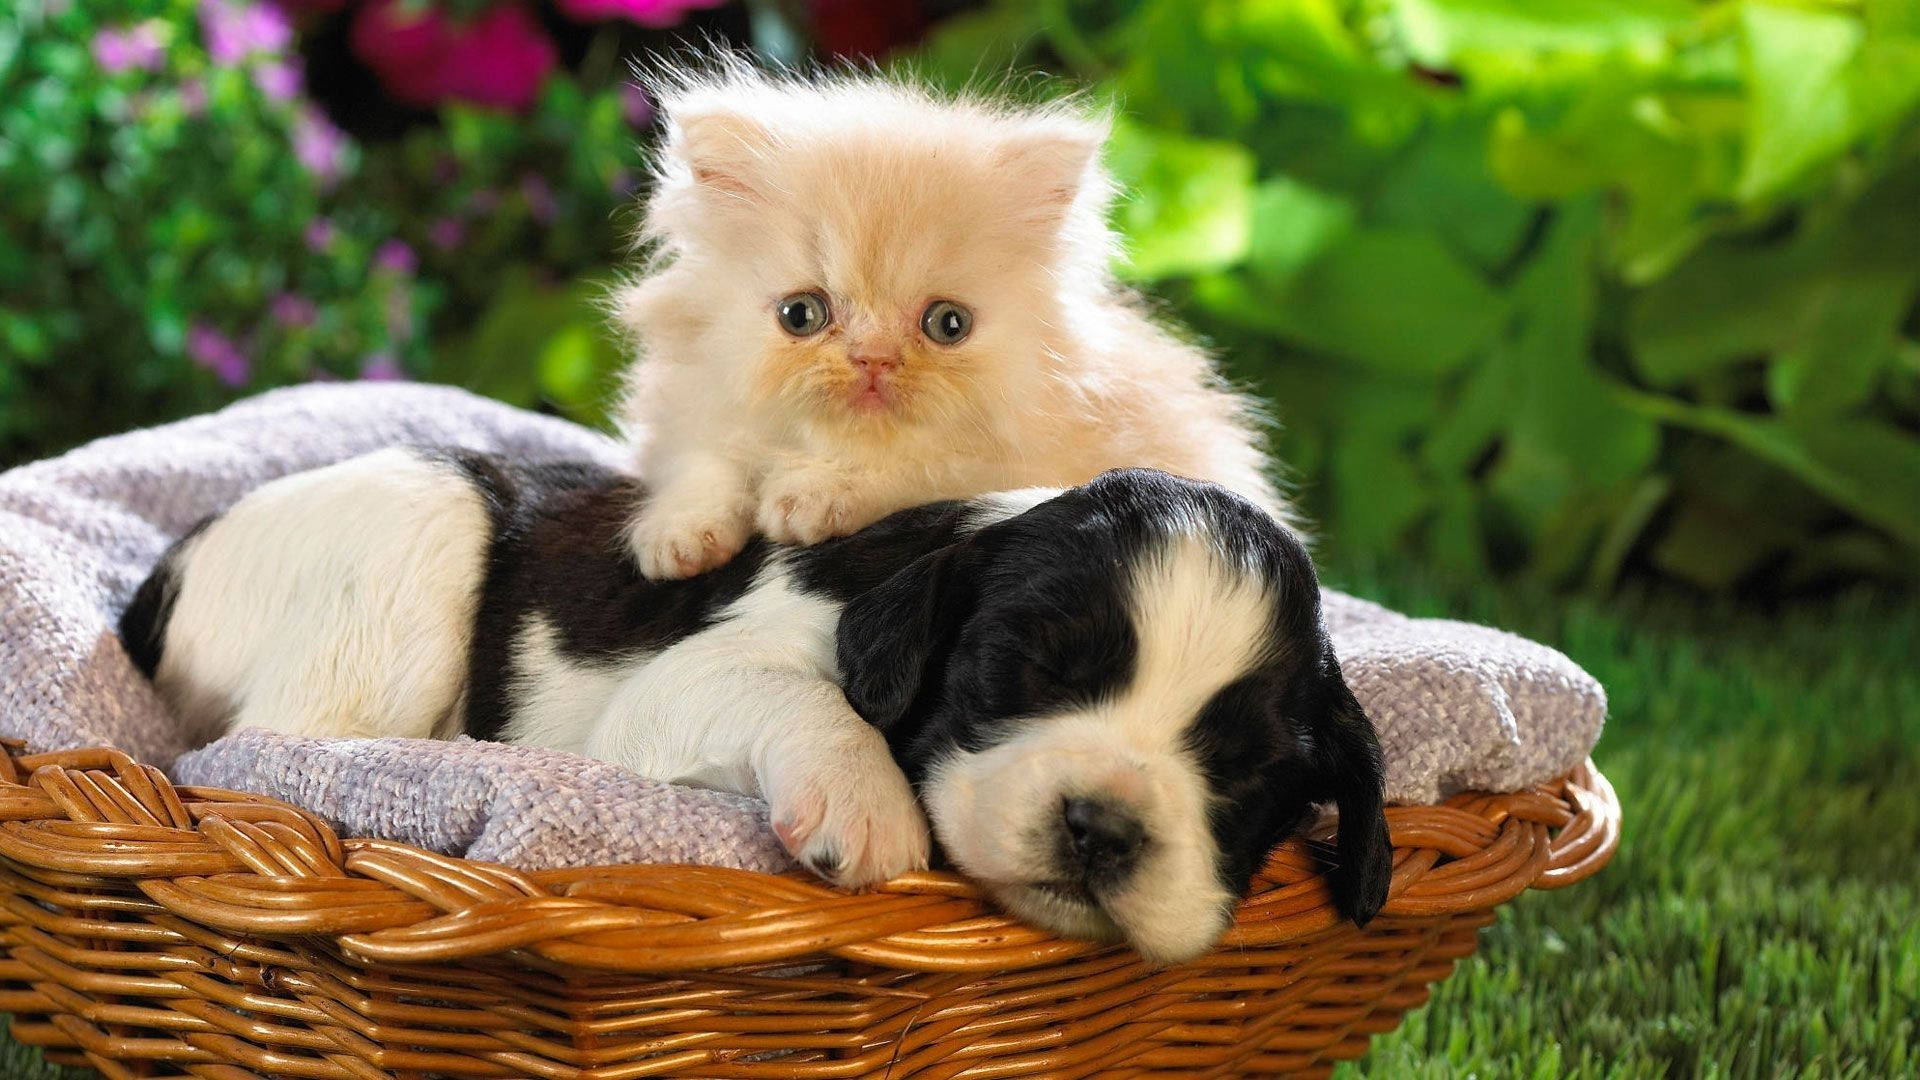 Baby Animal Kitten On Puppy